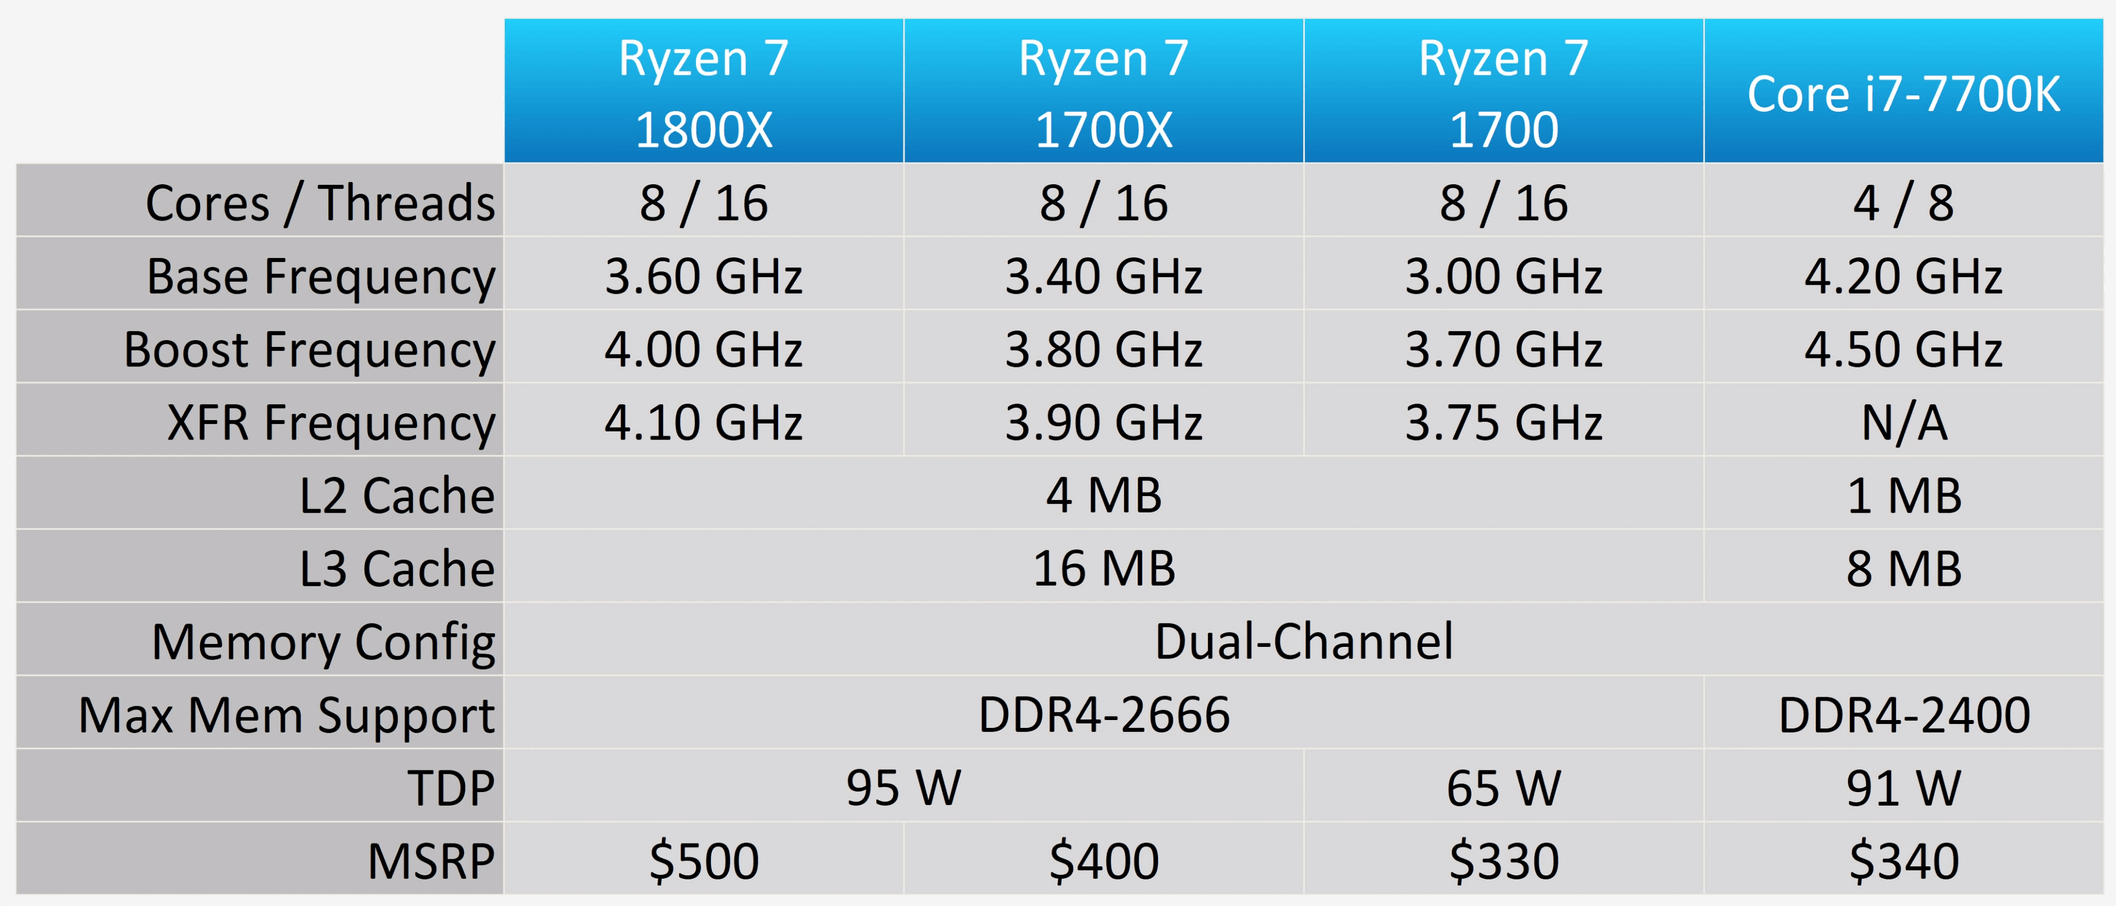 Dos anos despues AMD Ryzen 7 1800X vs Intel Core